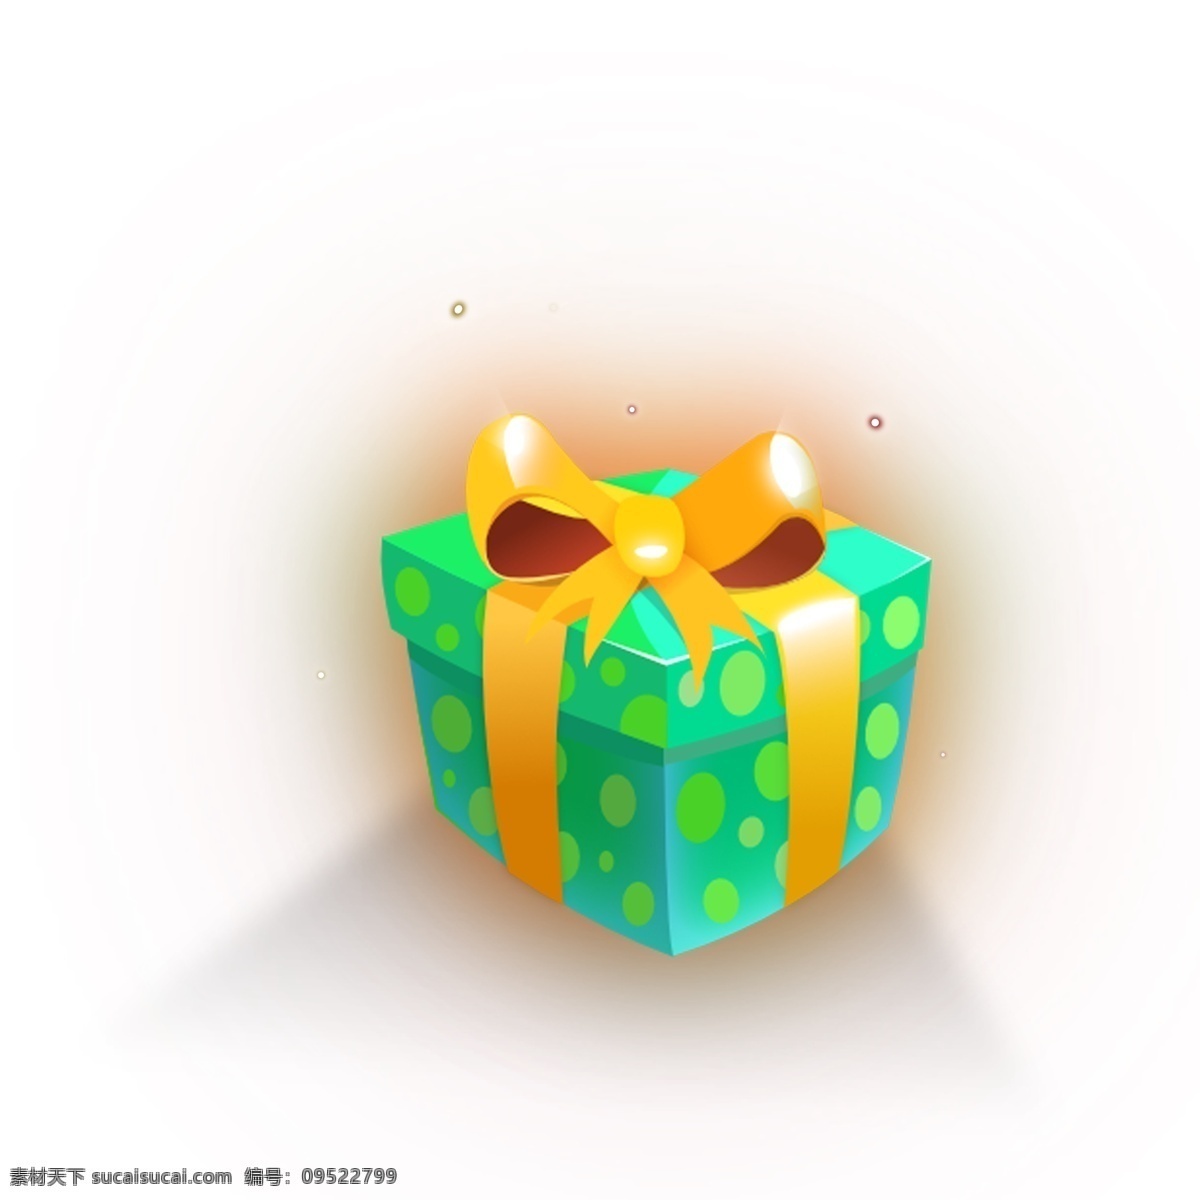 绿色 礼盒 免 抠 图 礼品 黄色的蝴蝶节 漂亮的礼物 包装盒子 生日礼盒 包装礼品盒 免抠图